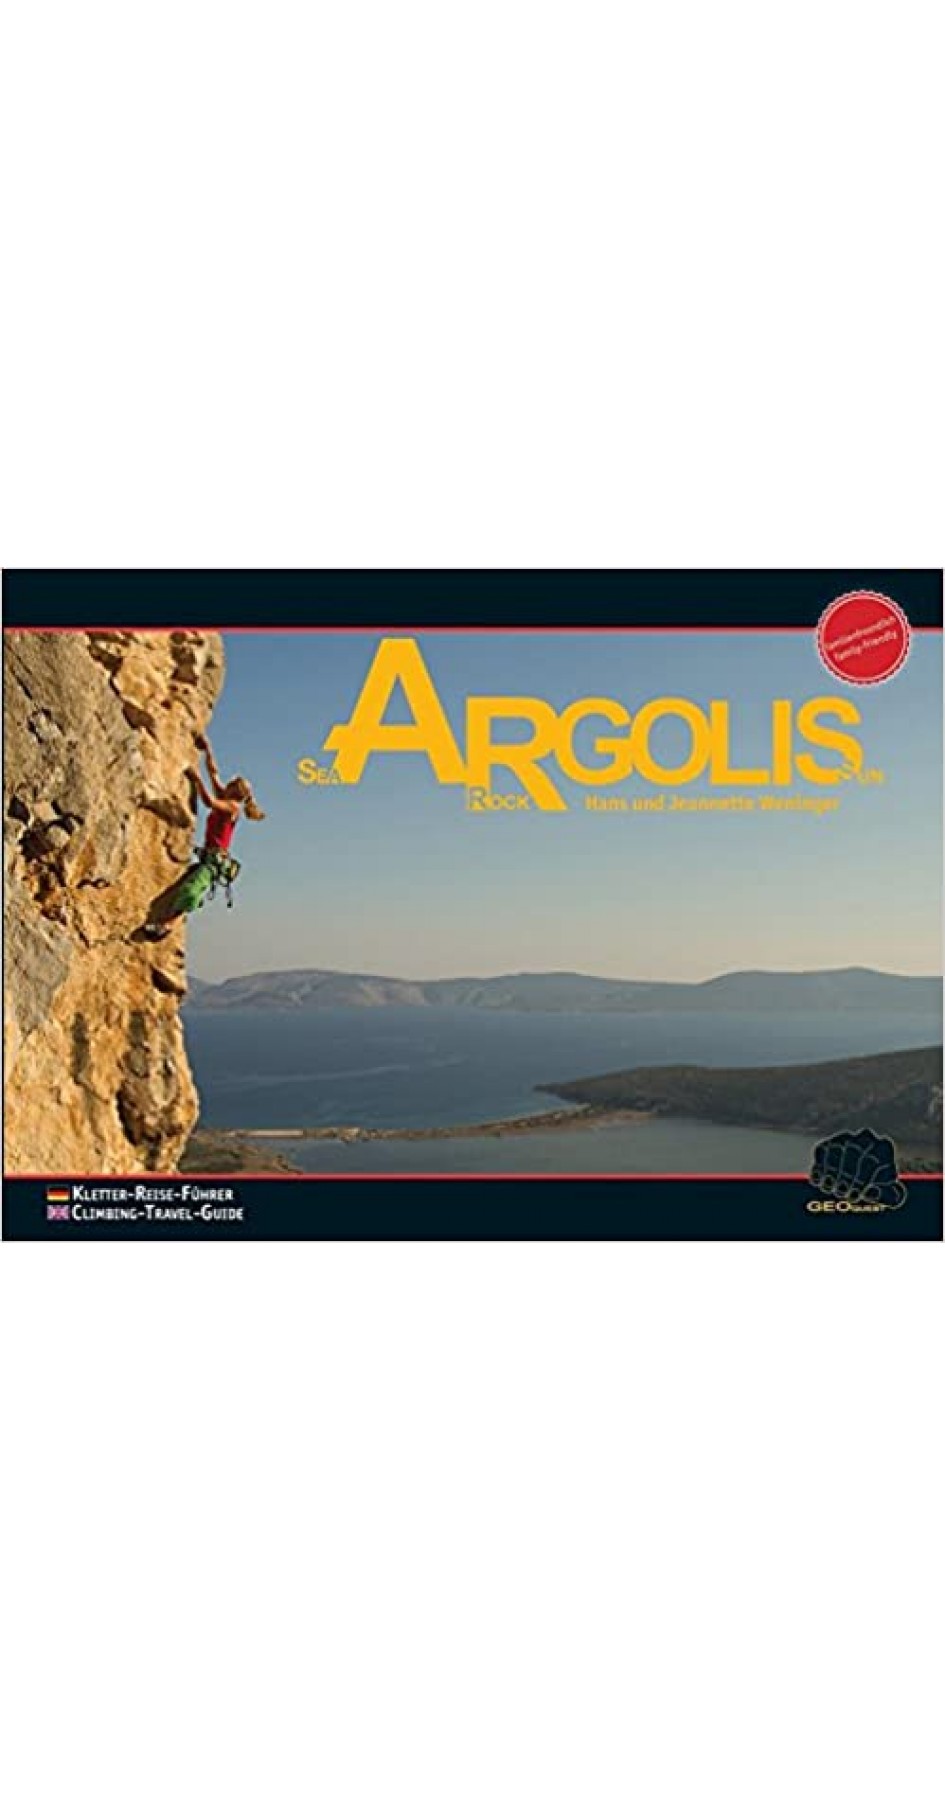 Argolis: Sea, Rock